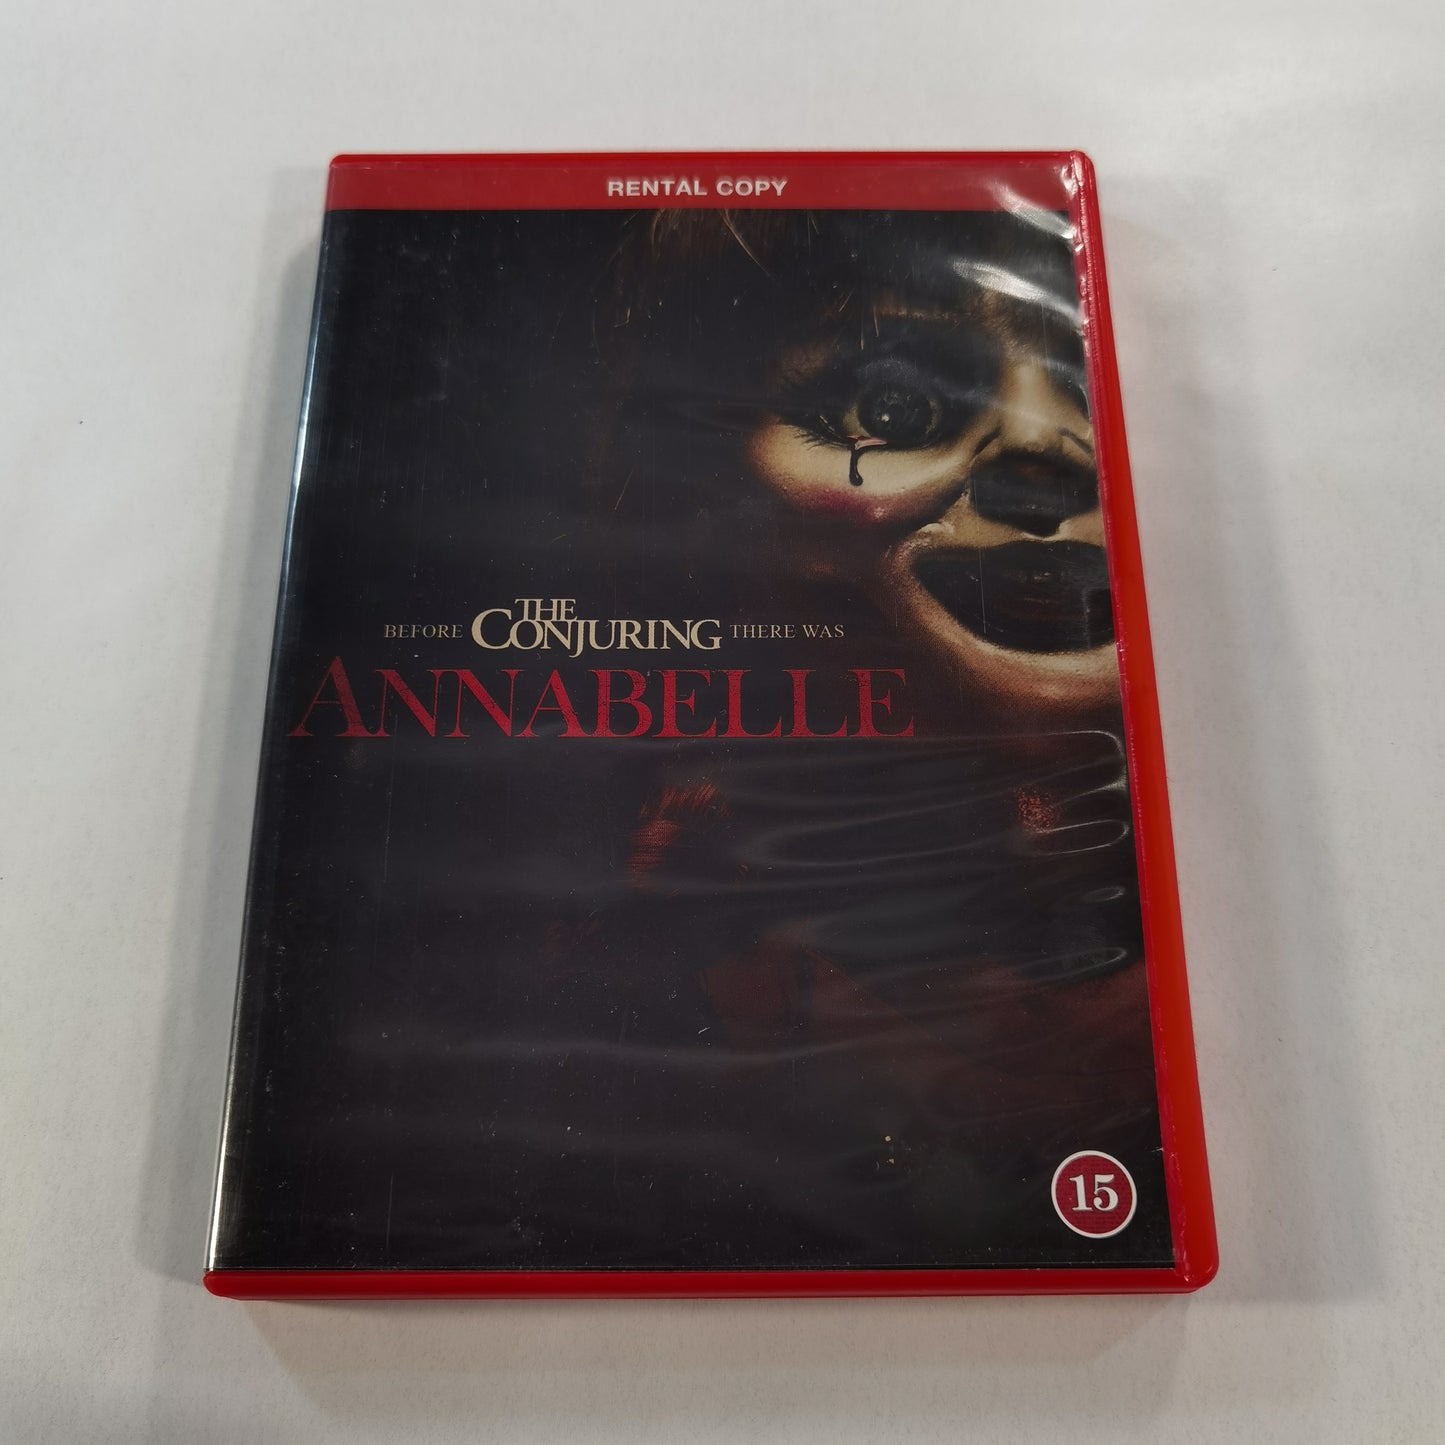 Annabelle (2014) - DVD FI 2015 RC